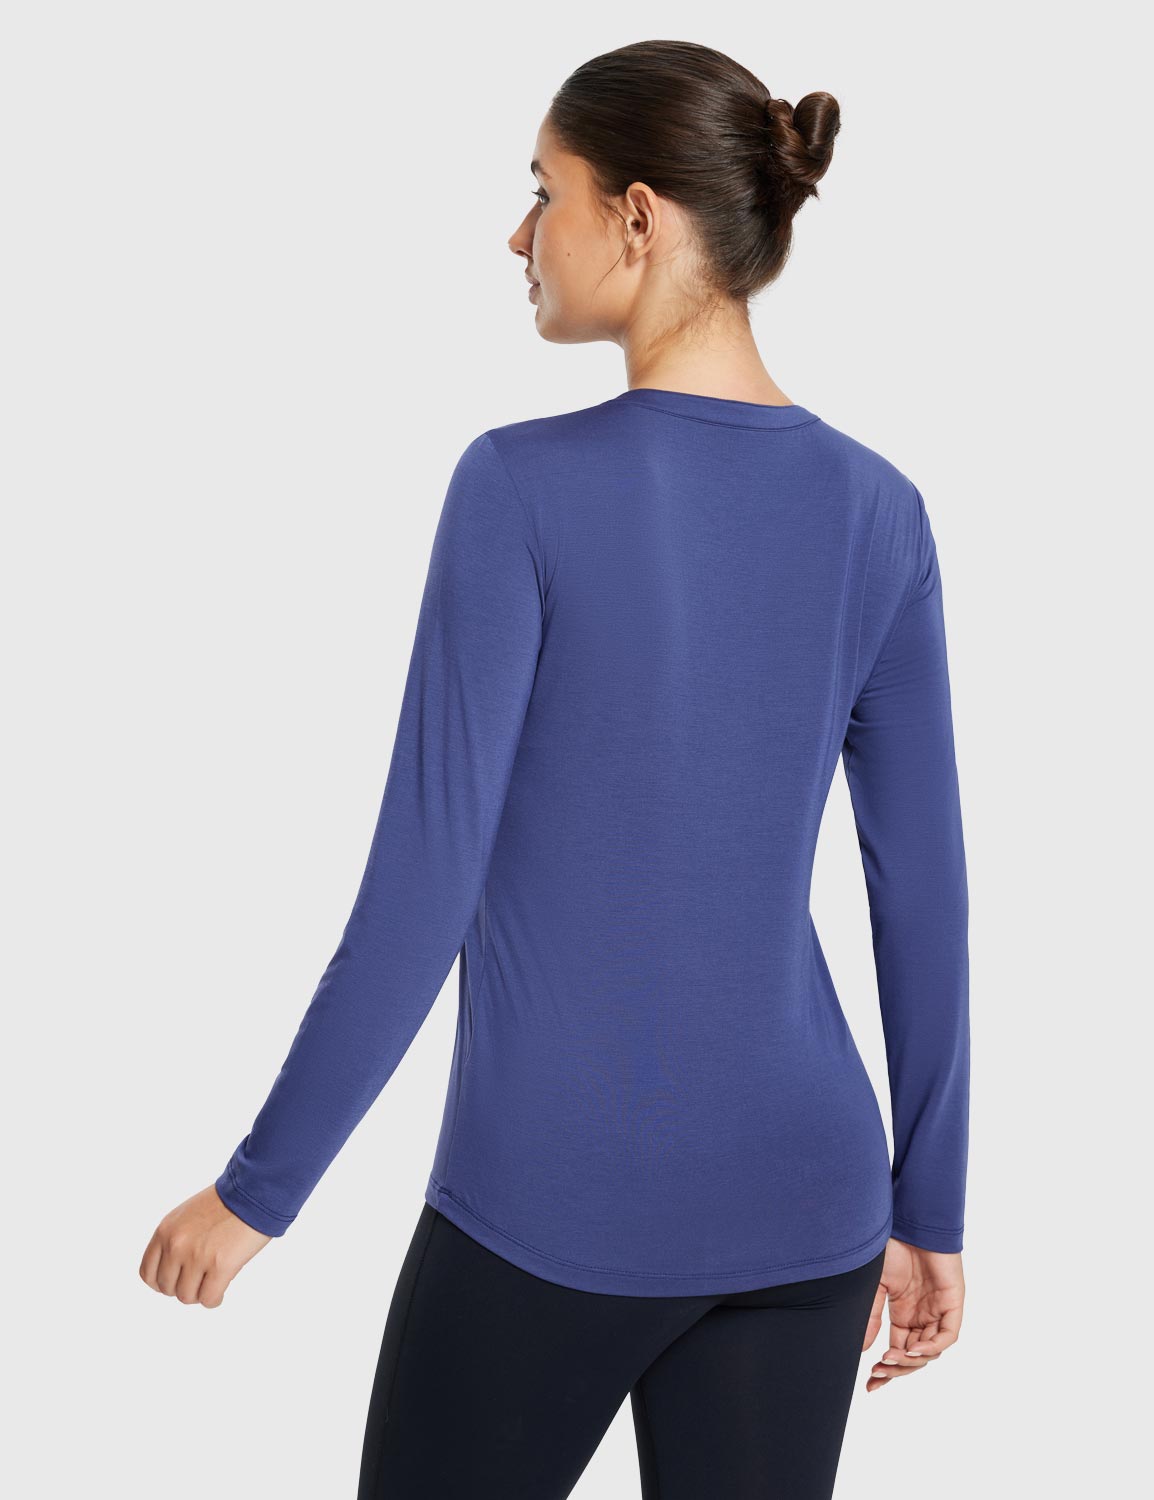 Baleaf Women's Ultra Soft Fall V-Neck Loose Fit Casual T-Shirt Estate Blue Back